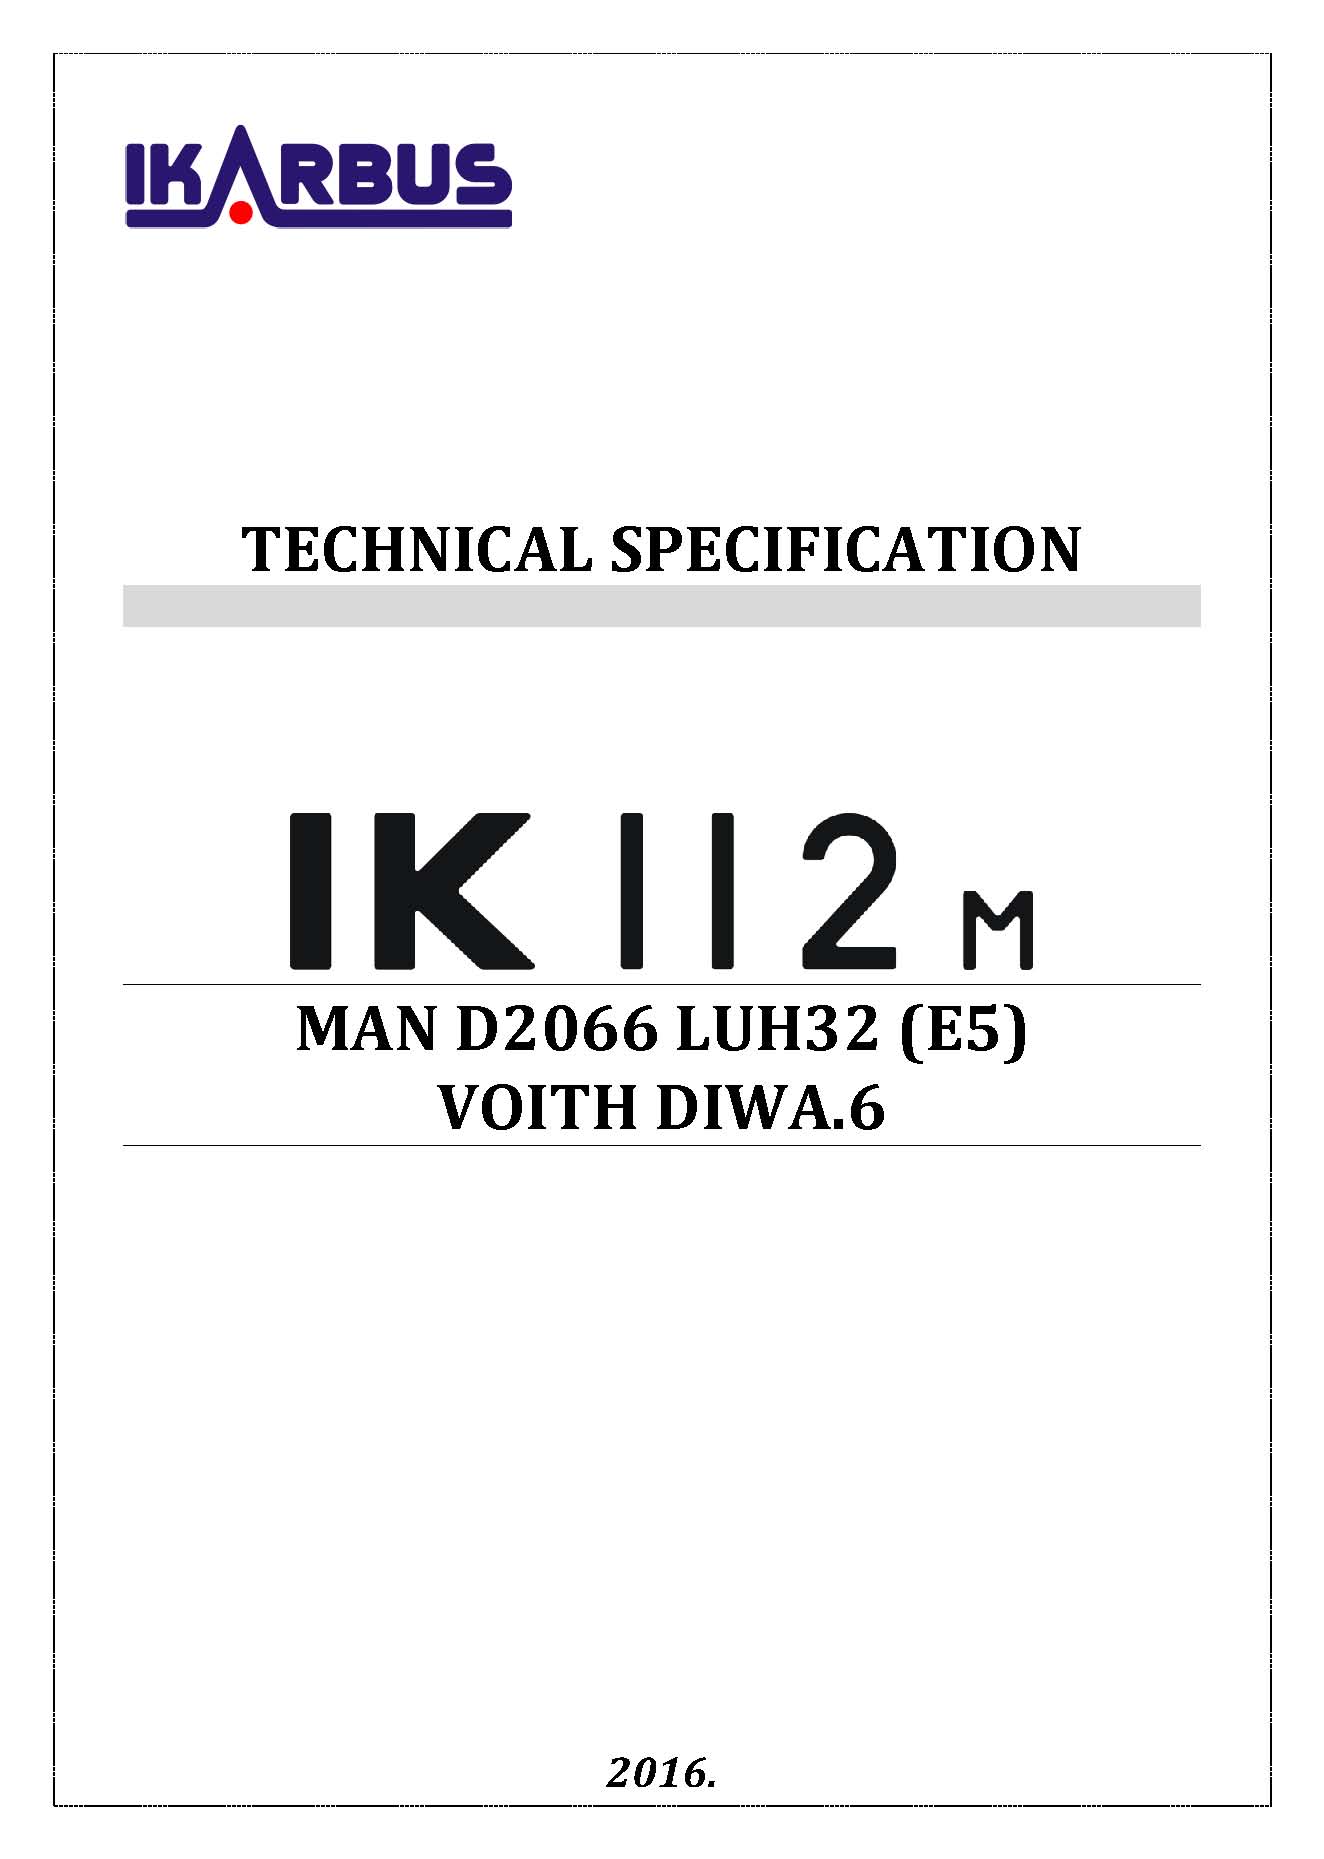 TS IK112M web1 EN